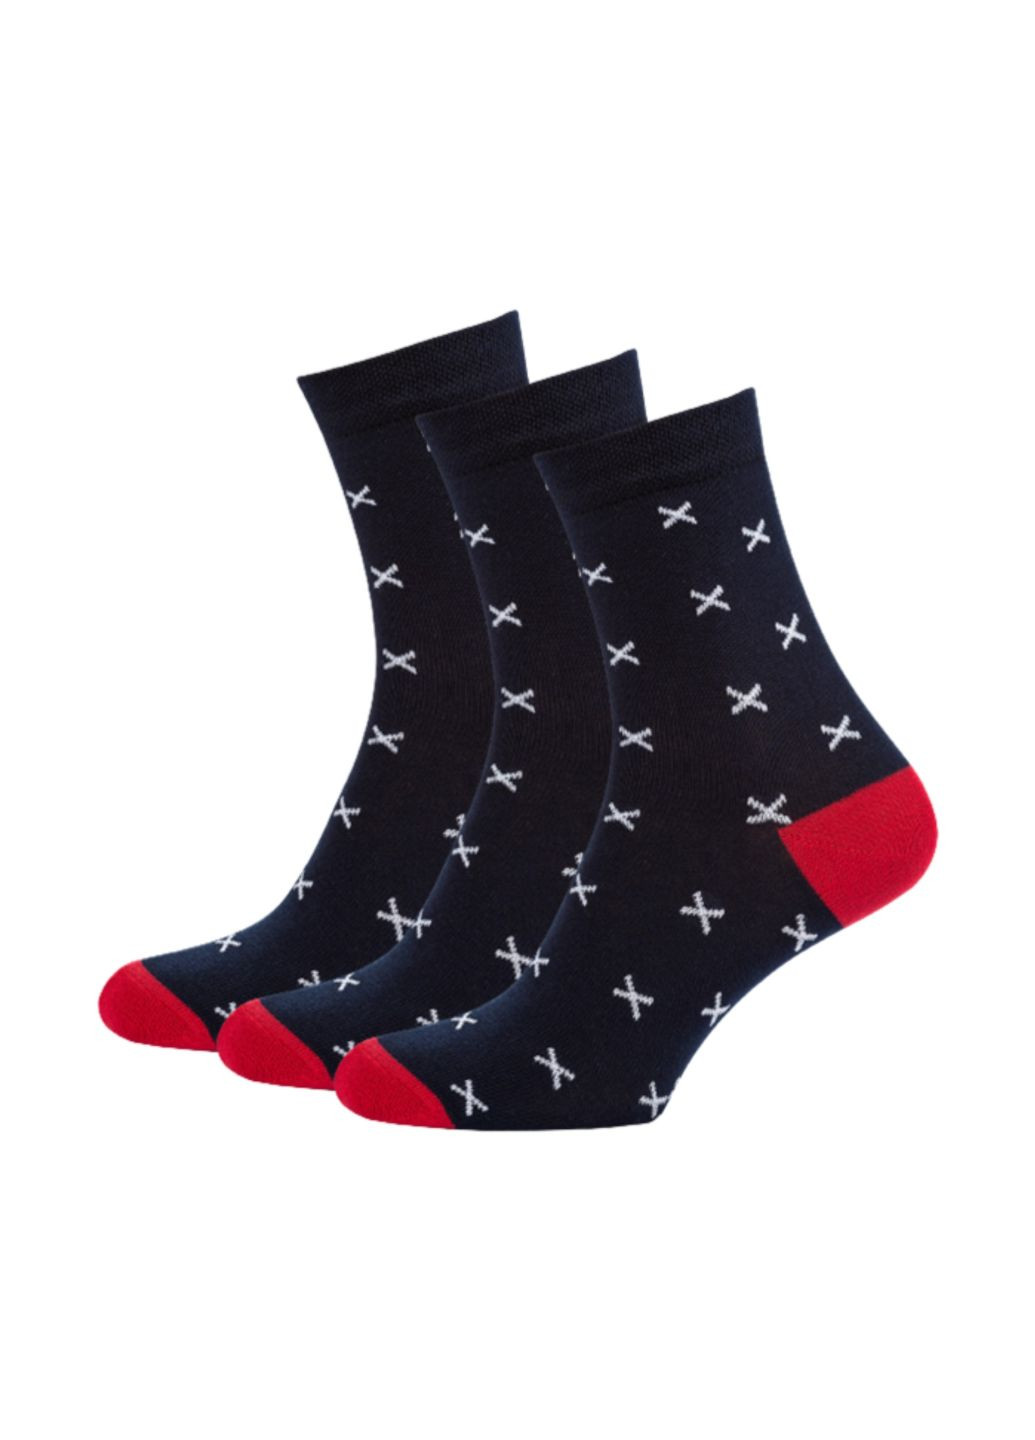 RFT Шкарпетки жіночі високі. Набір (3 шт.) Siela rt1312-052_набори (260063072)